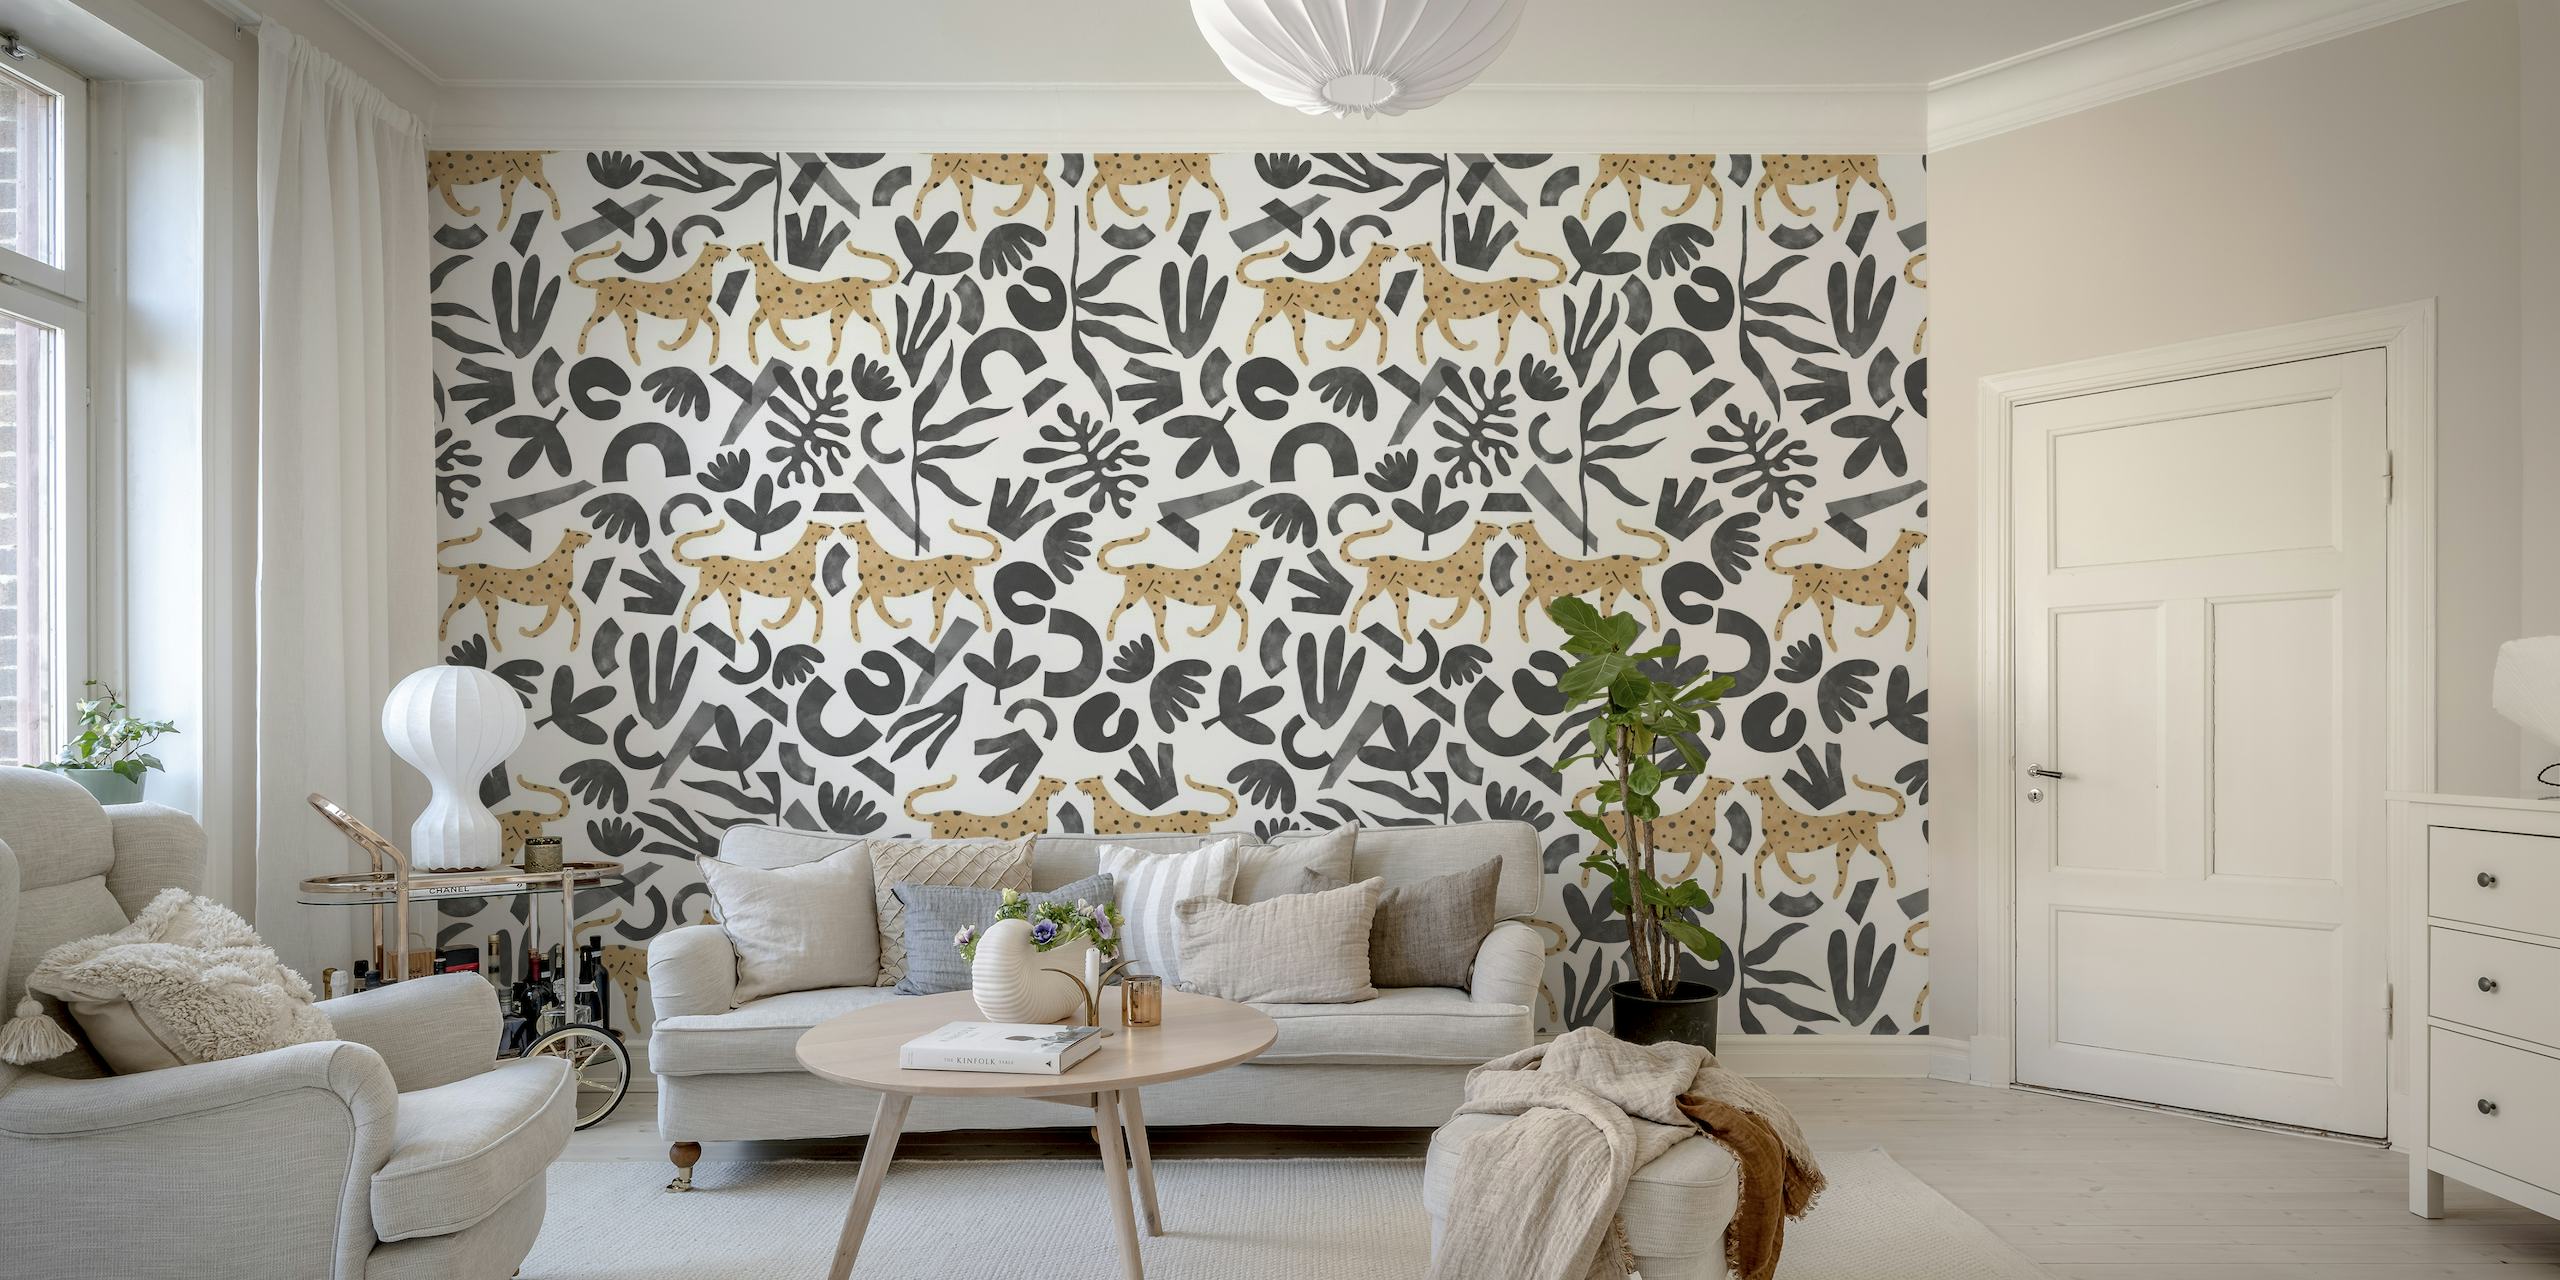 Leopardos estilizados entre elementos botánicos abstractos en un diseño de mural moderno